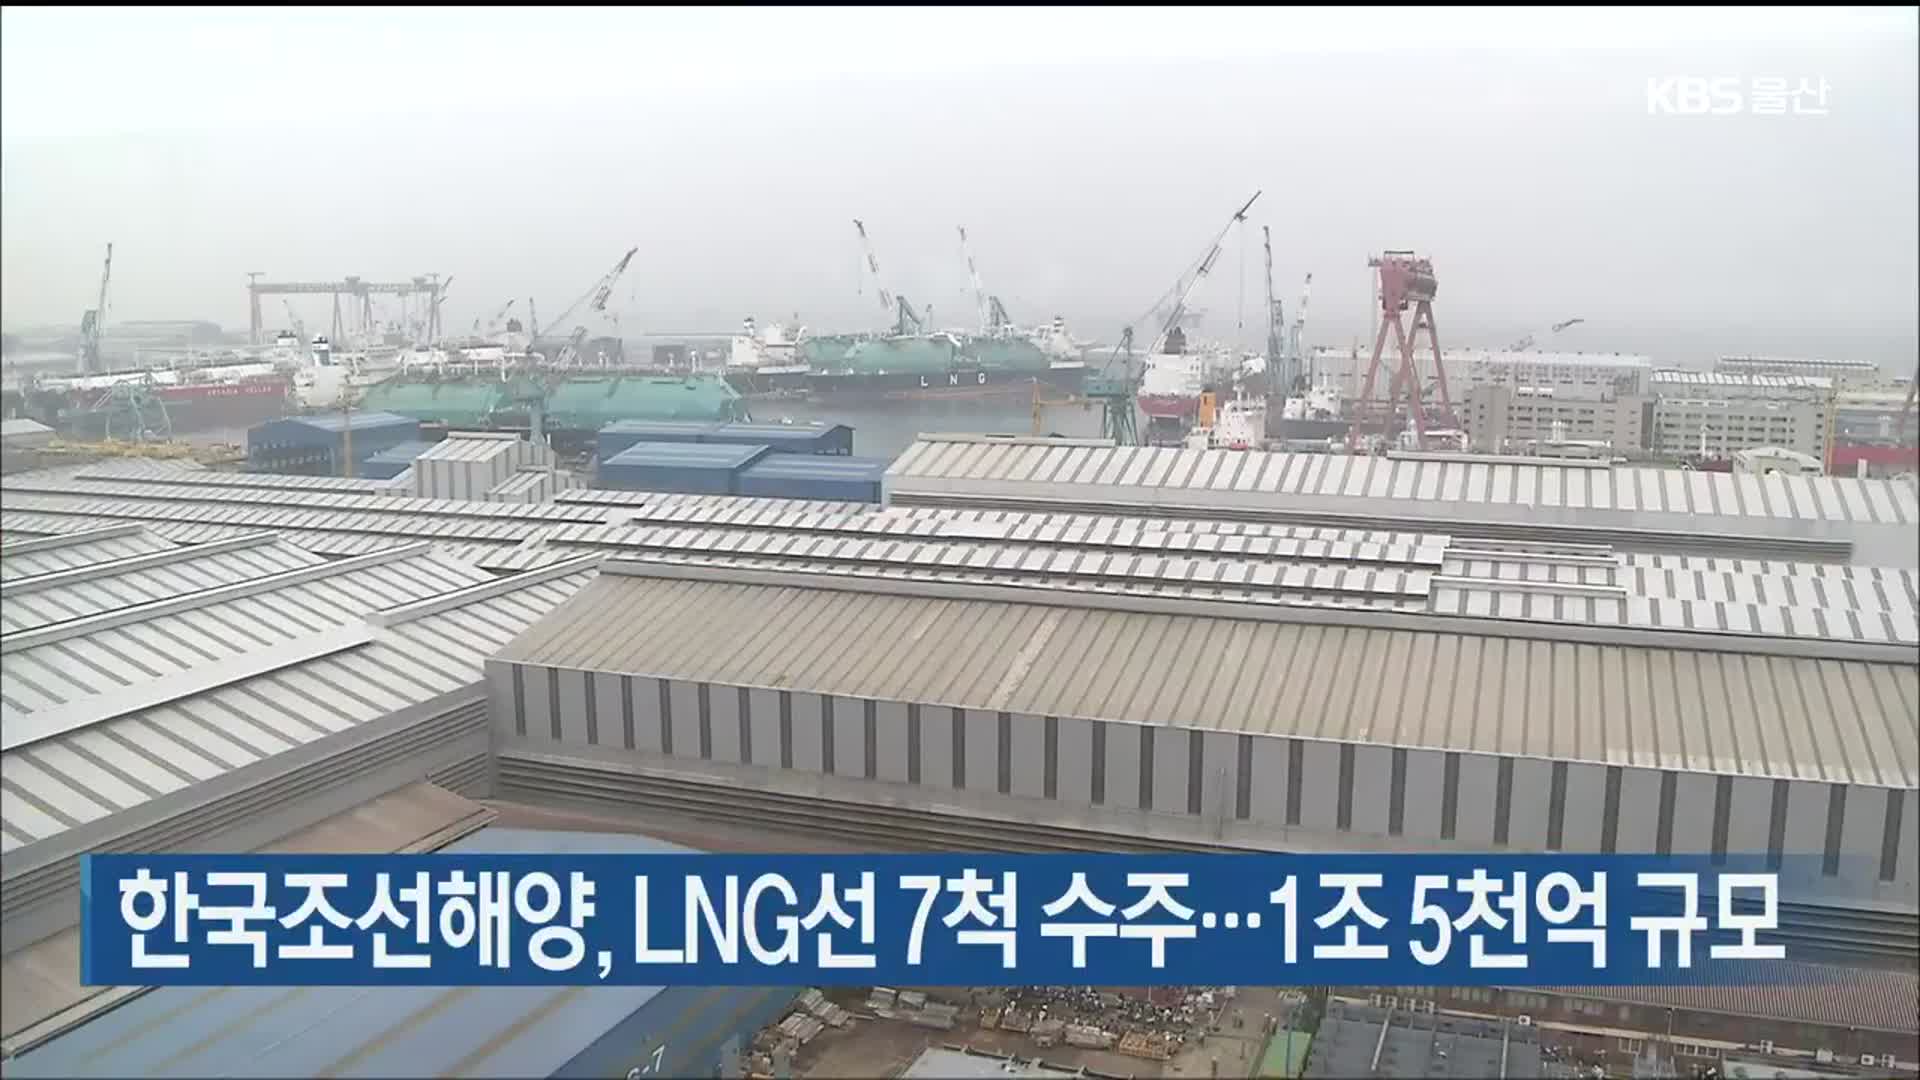 한국조선해양, LNG선 7척 수주…1조 5천억 규모